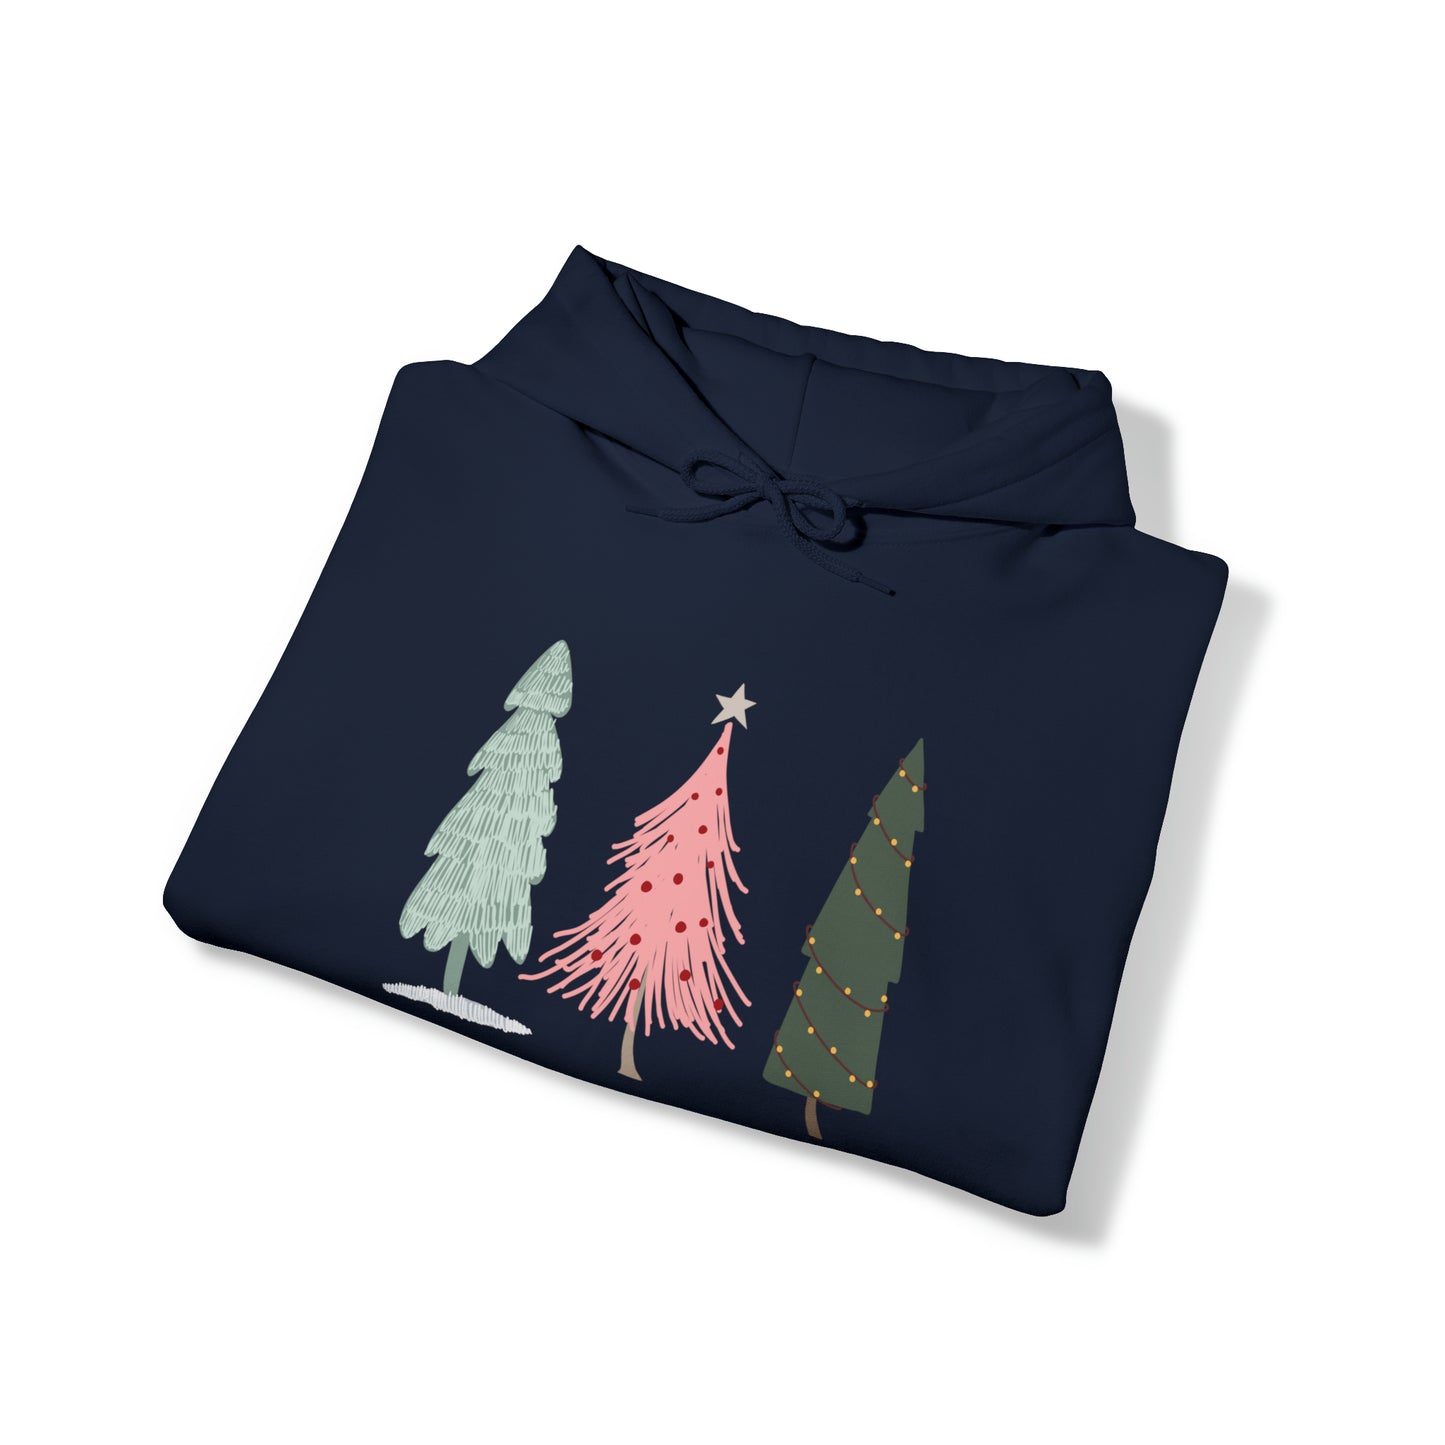 Christmas Tree Hoodie Sweatshirt